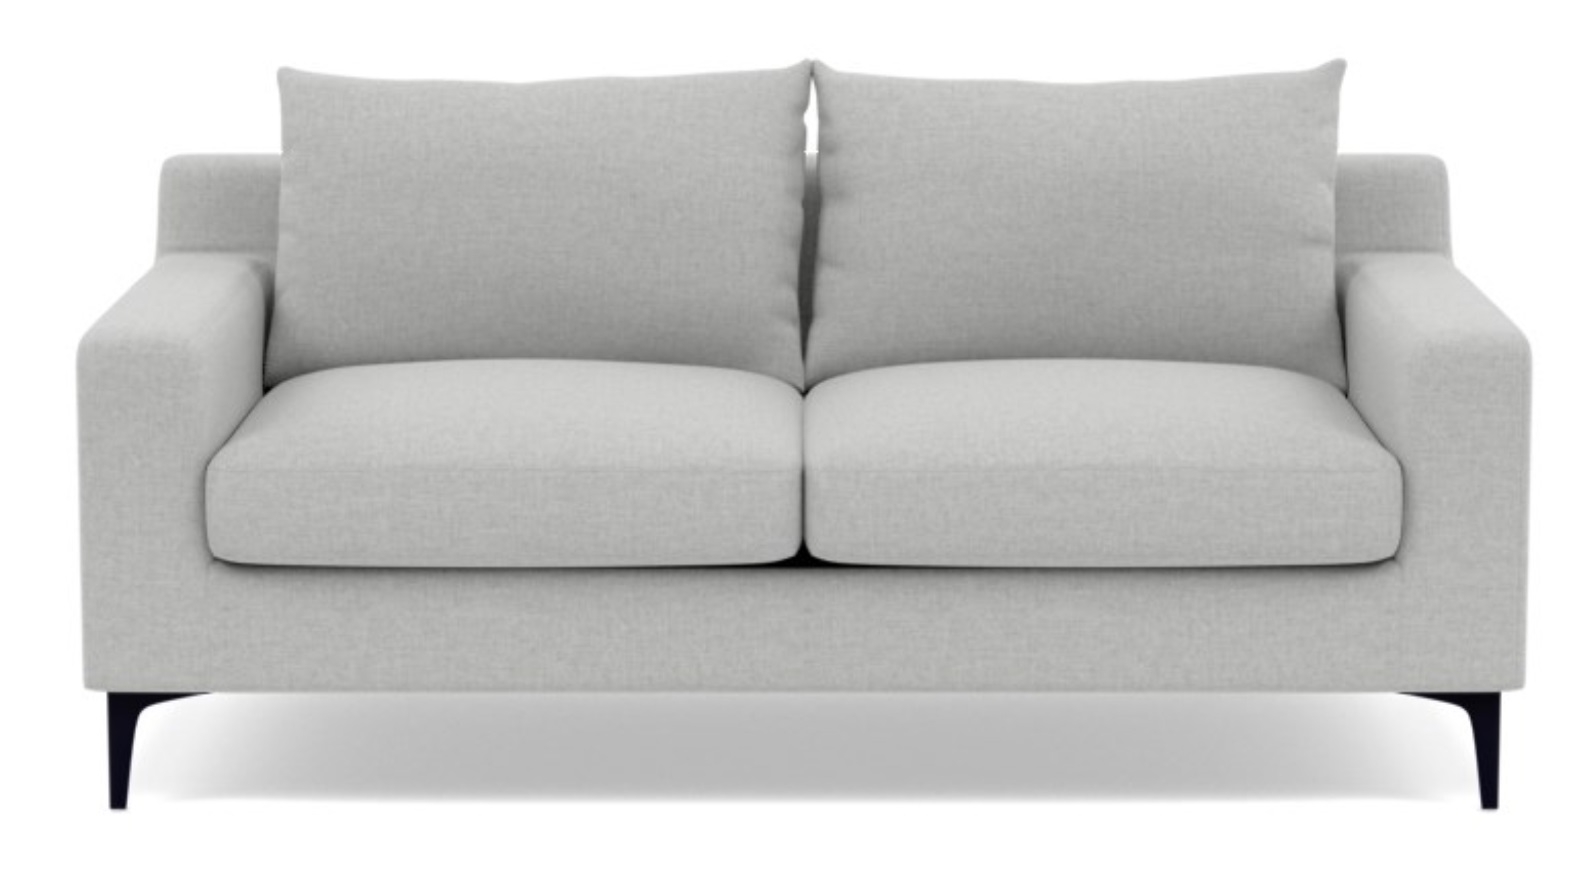 SLOAN Loveseat-Ecru Monochromatic Plush, Matte Black Sloan L Leg, 63”, 2 Cushions, Standard down blend - Image 0